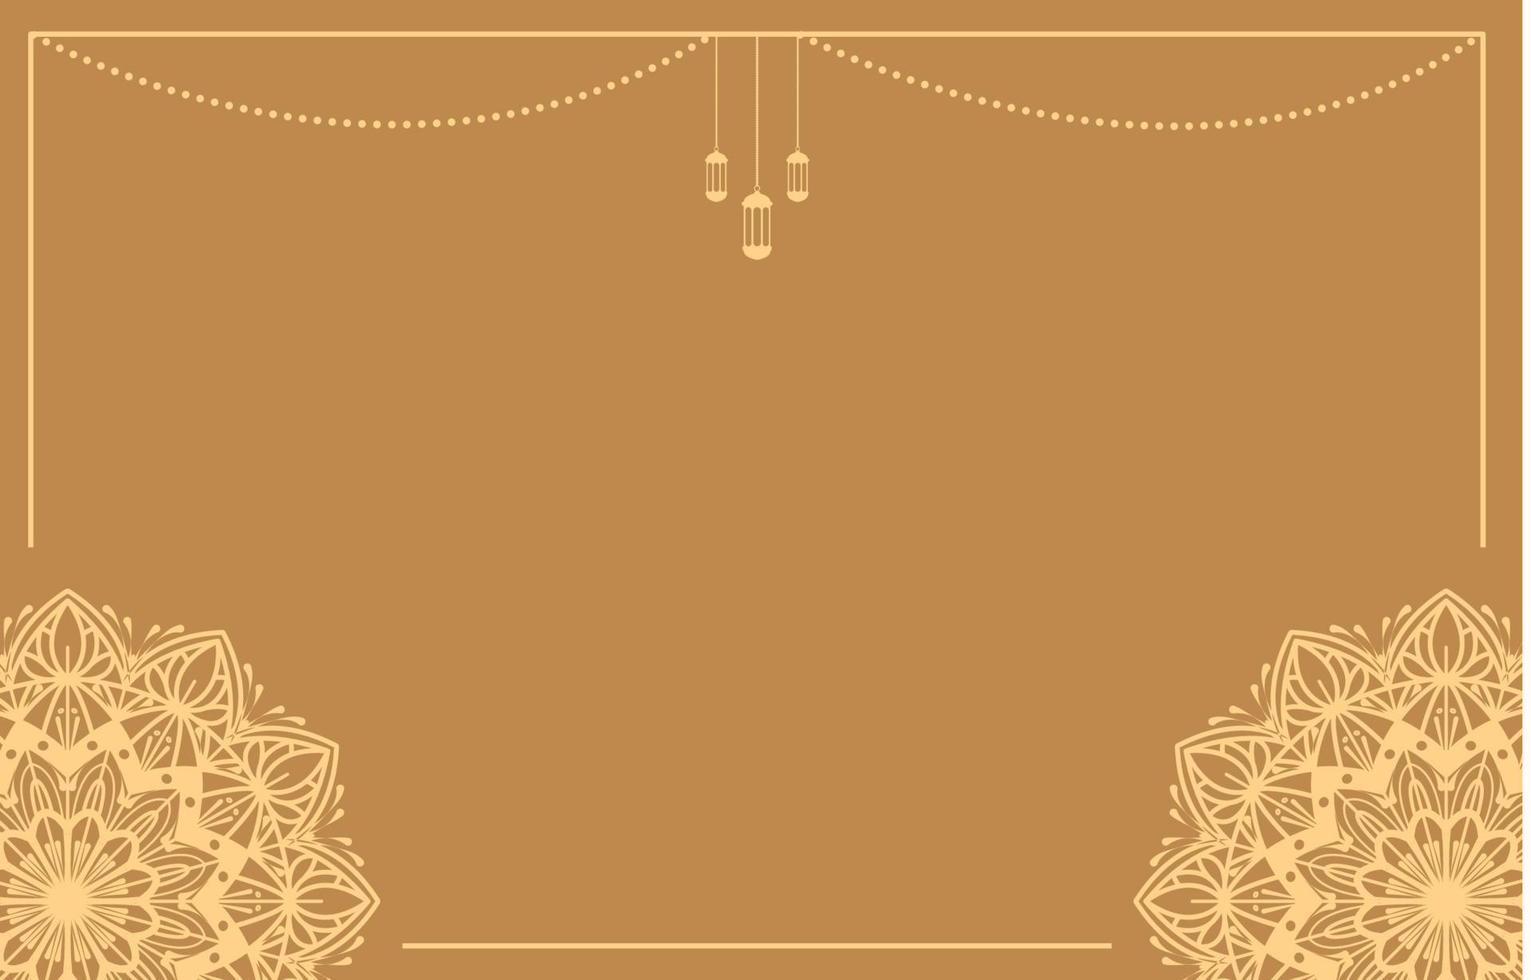 design de vetor de fundo islâmico com decoração de mandala árabe para banner do dia de ramadan kareem ou eid mubarak, muharram